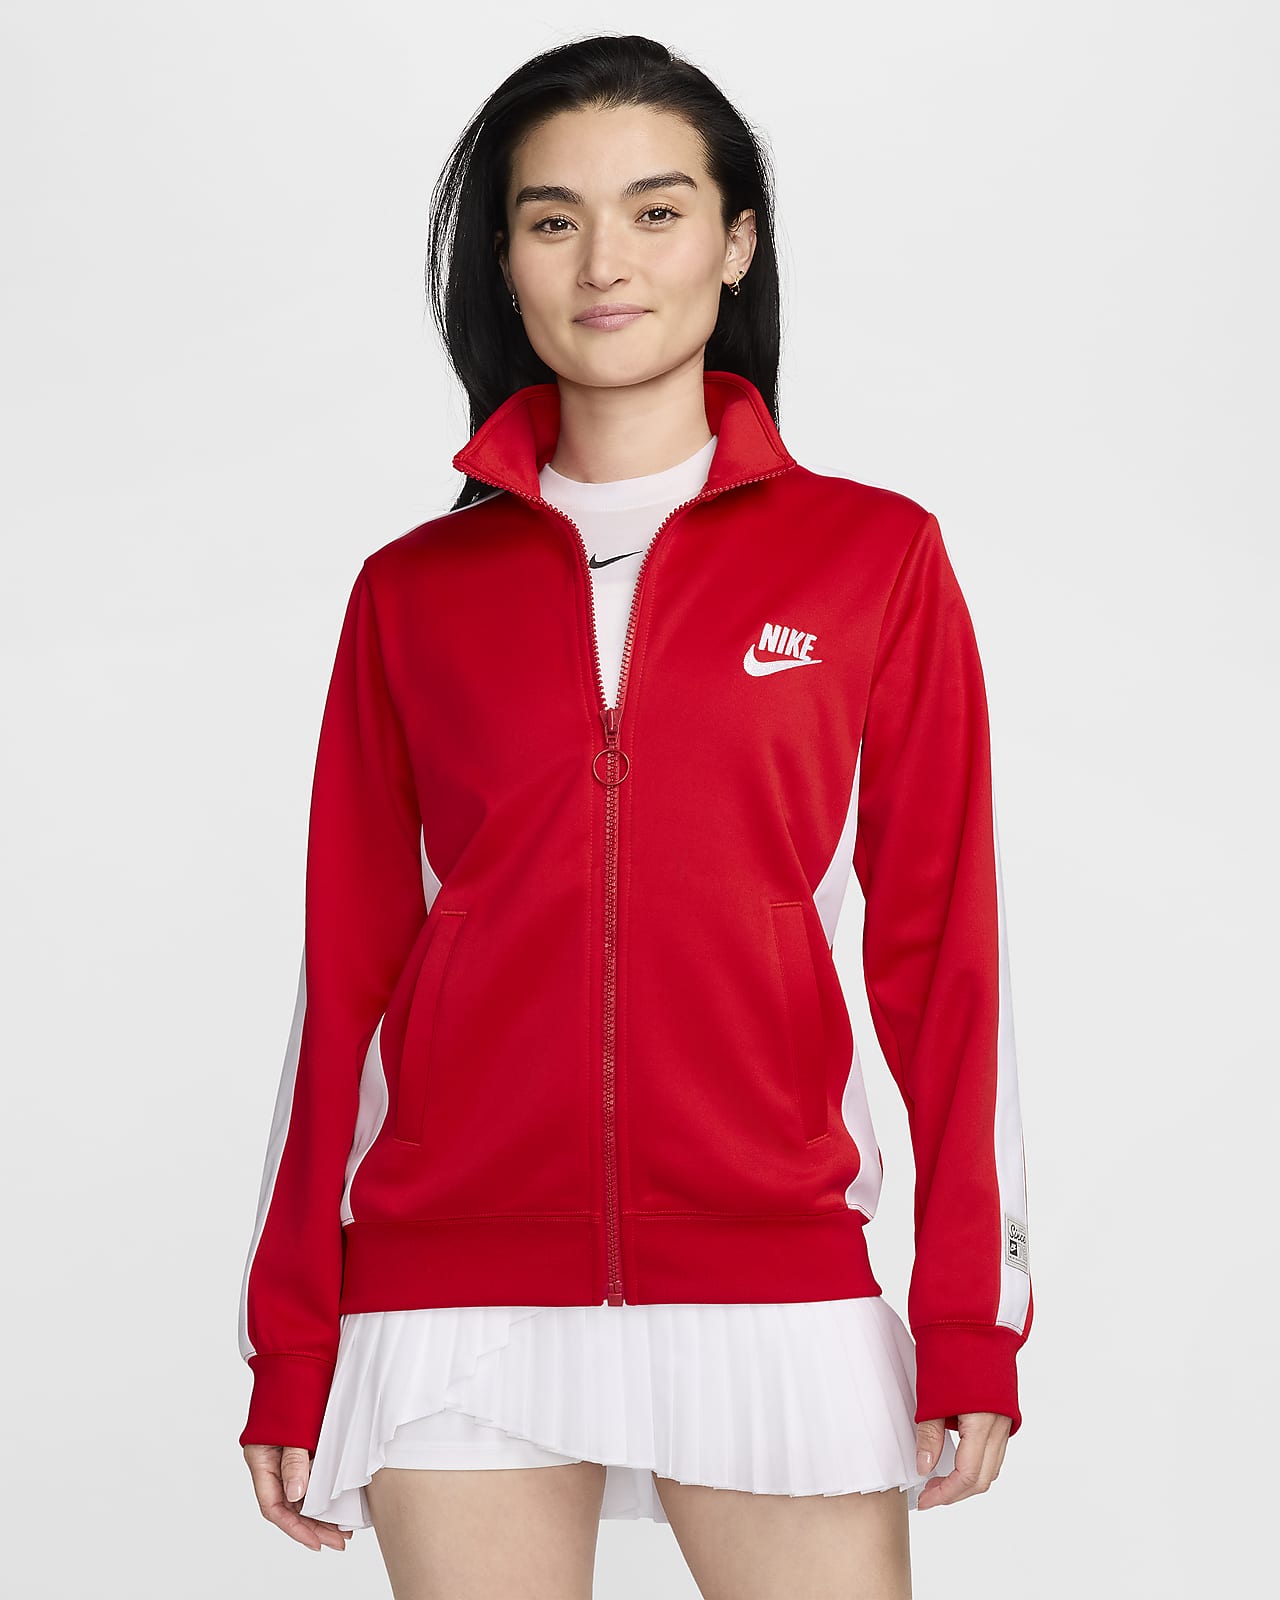 Nike Sportswear Women's Knit Jacket